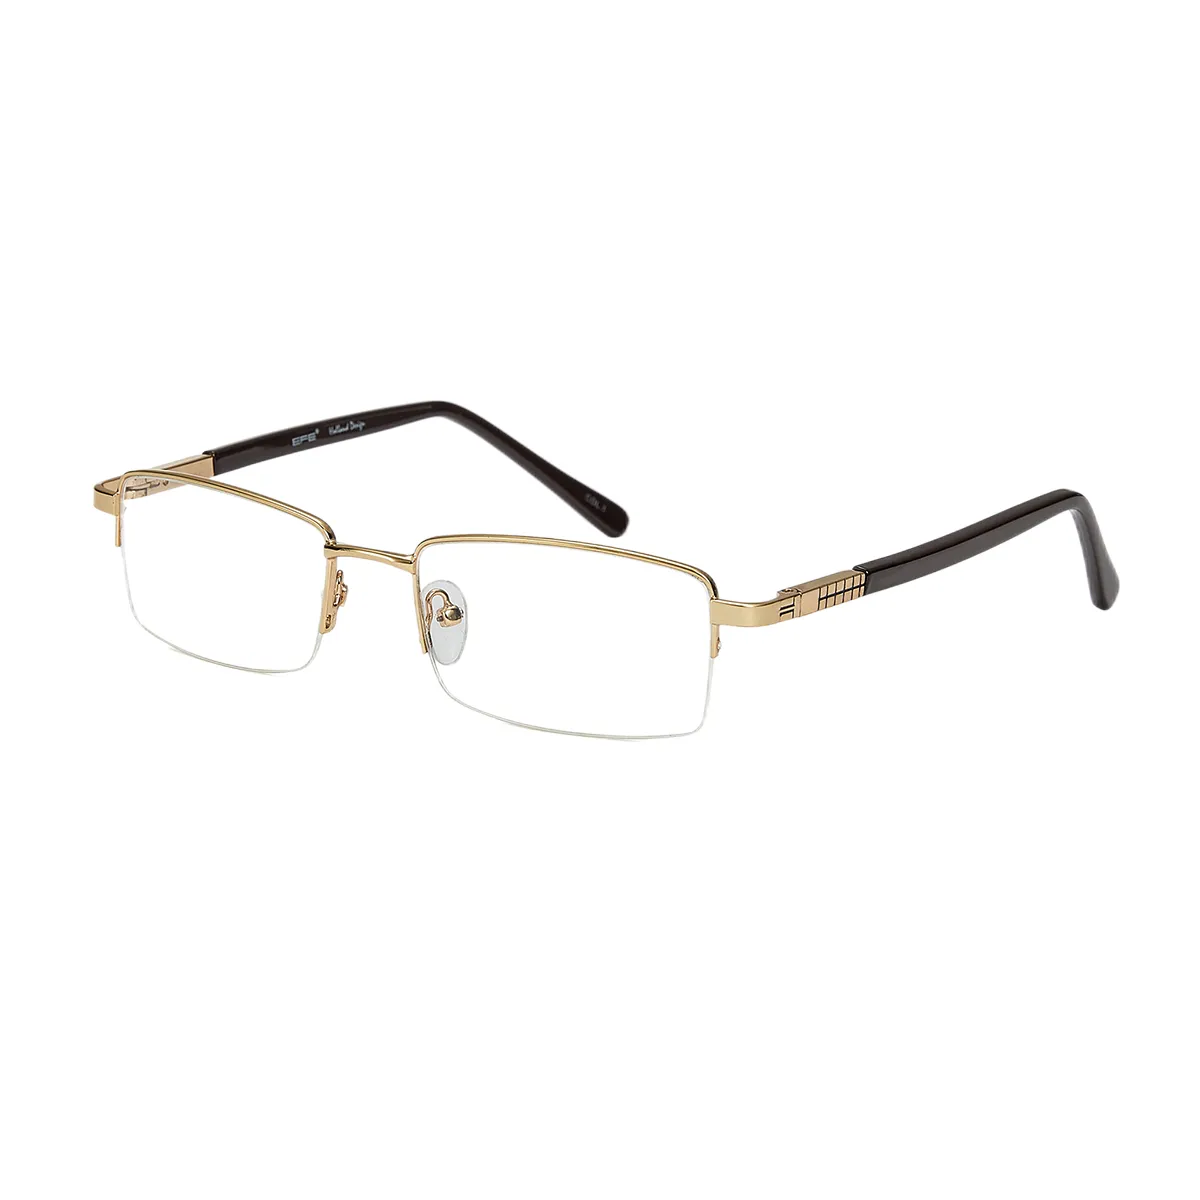 Classic Rectangle Black Eyeglasses for Men